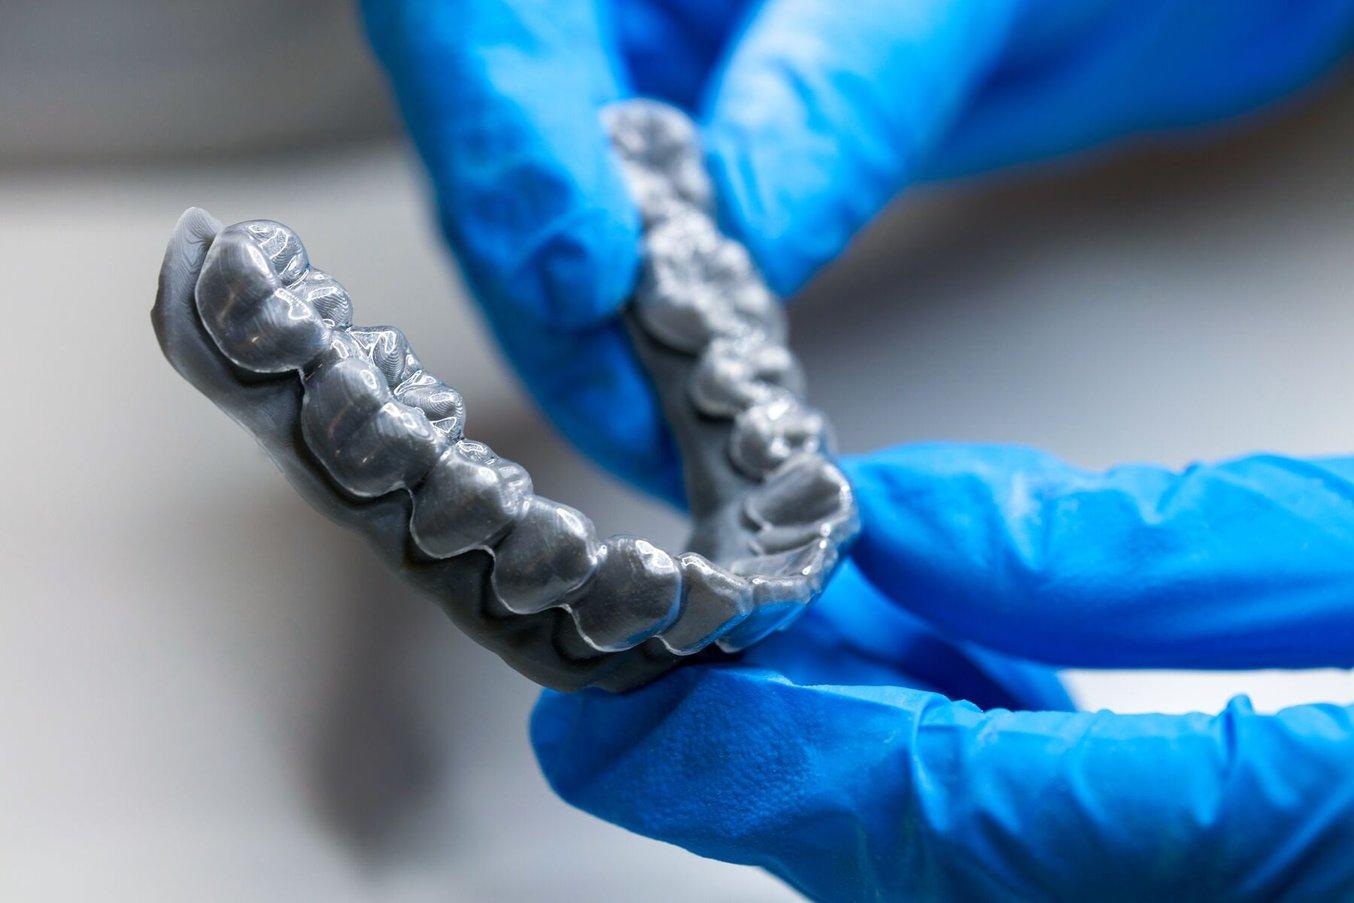 Le formage sous vide et le formage sous pression sur des modèles imprimés en 3D sont les méthodes les plus courantes pour produire des plaques occlusales transparentes en orthodontie.